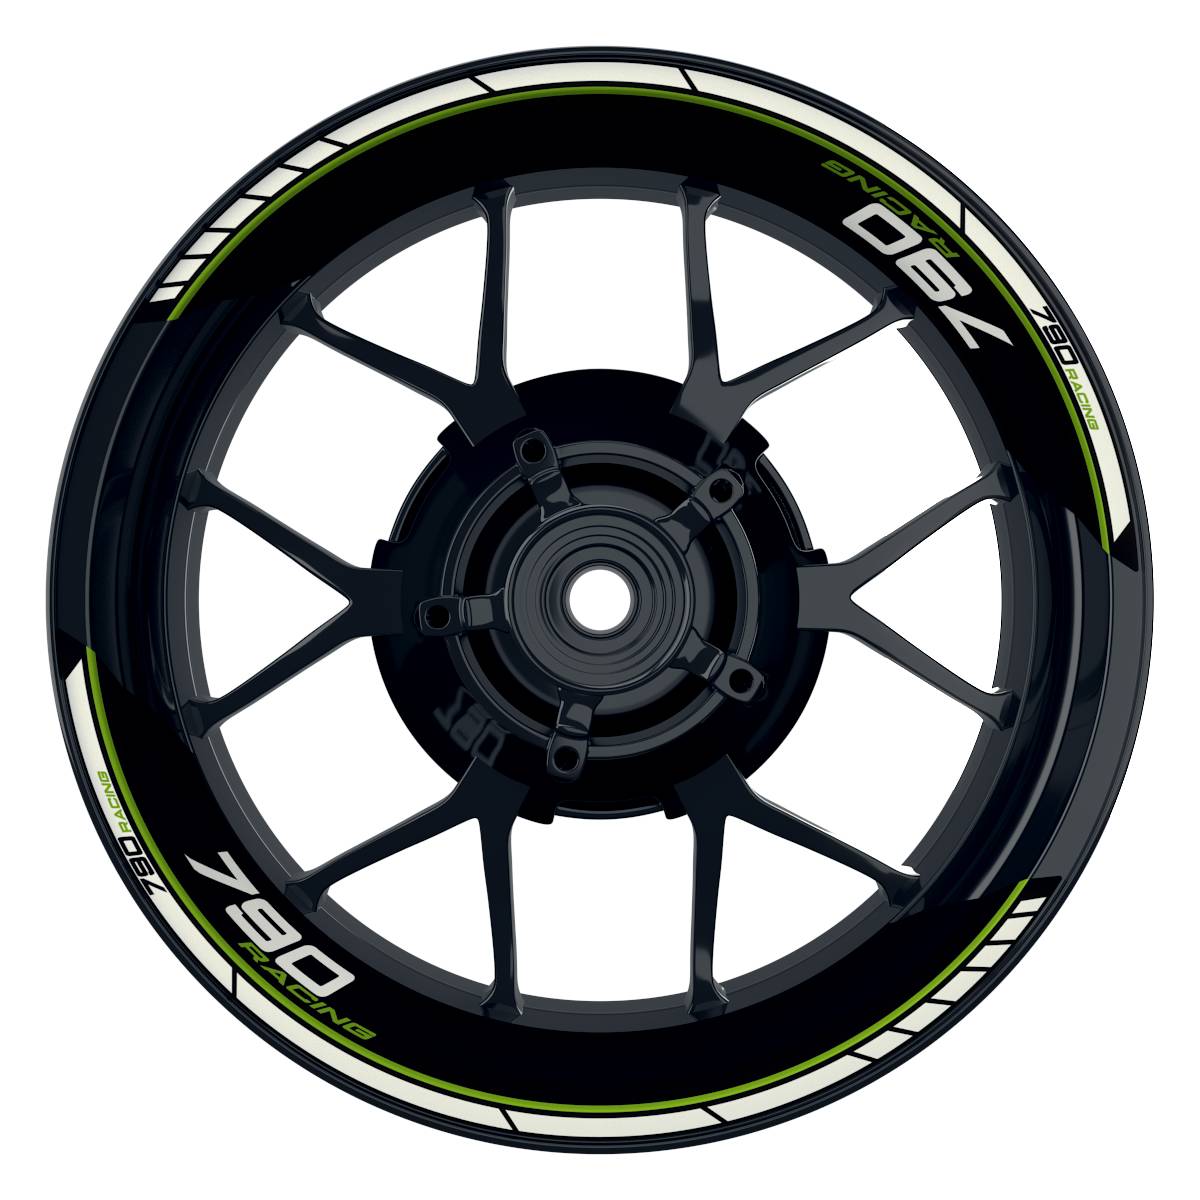 KTM Racing 790 Clean schwarz gruen Frontansicht